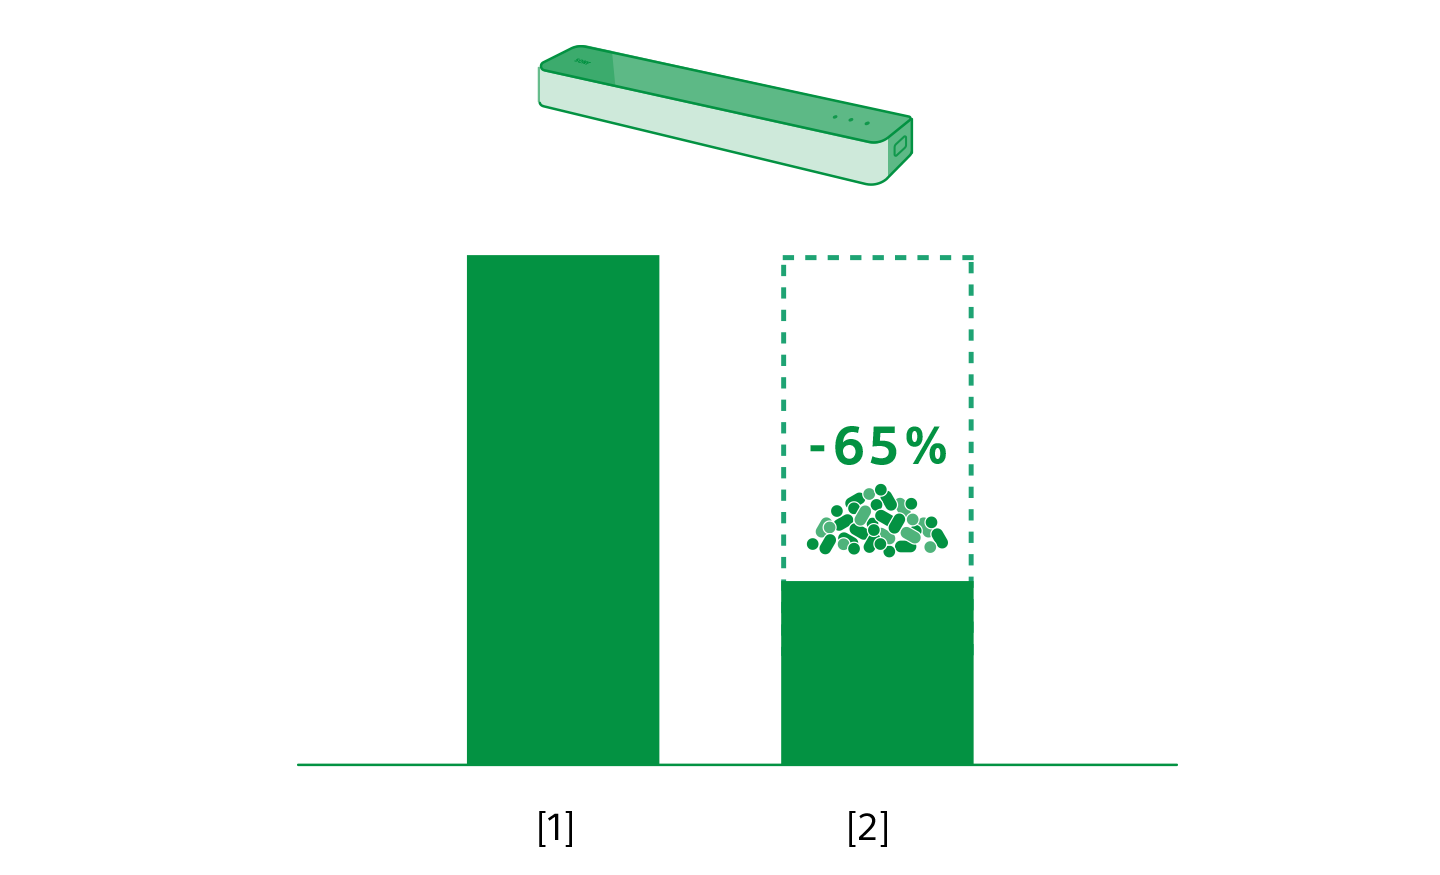 プラスチックの使用率が45%減少したことを棒グラフで表している。棒グラフの上にサウンドバーのイラストが表示されている。